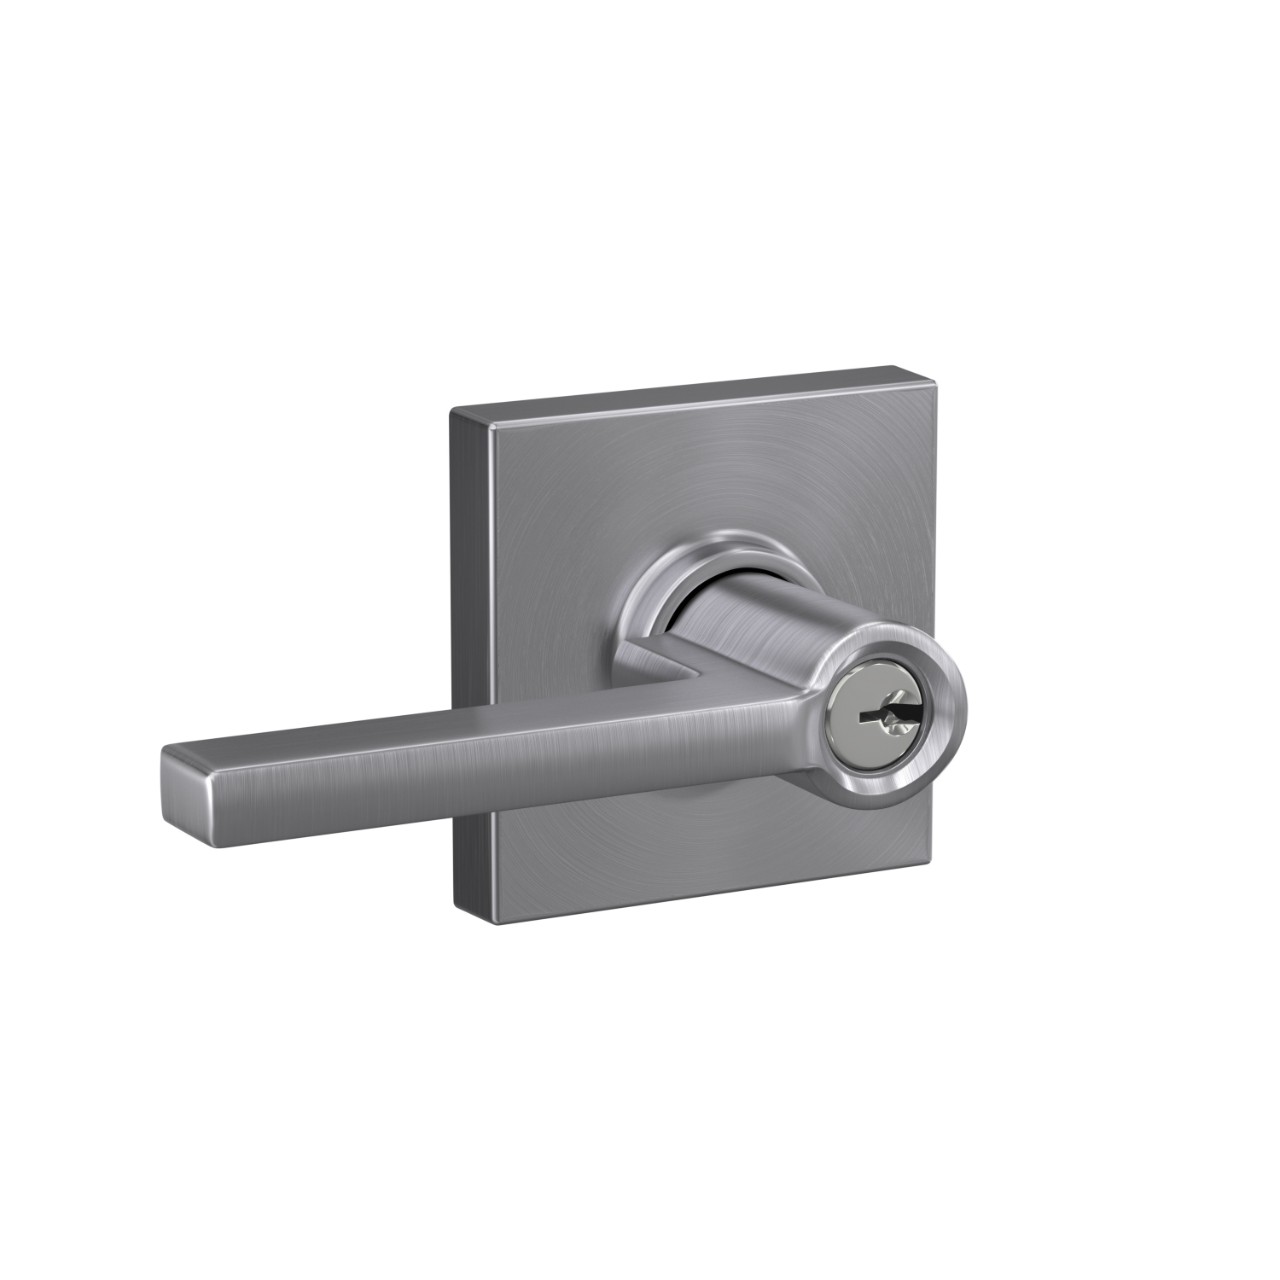 Latitude lever Keyed Entry lock